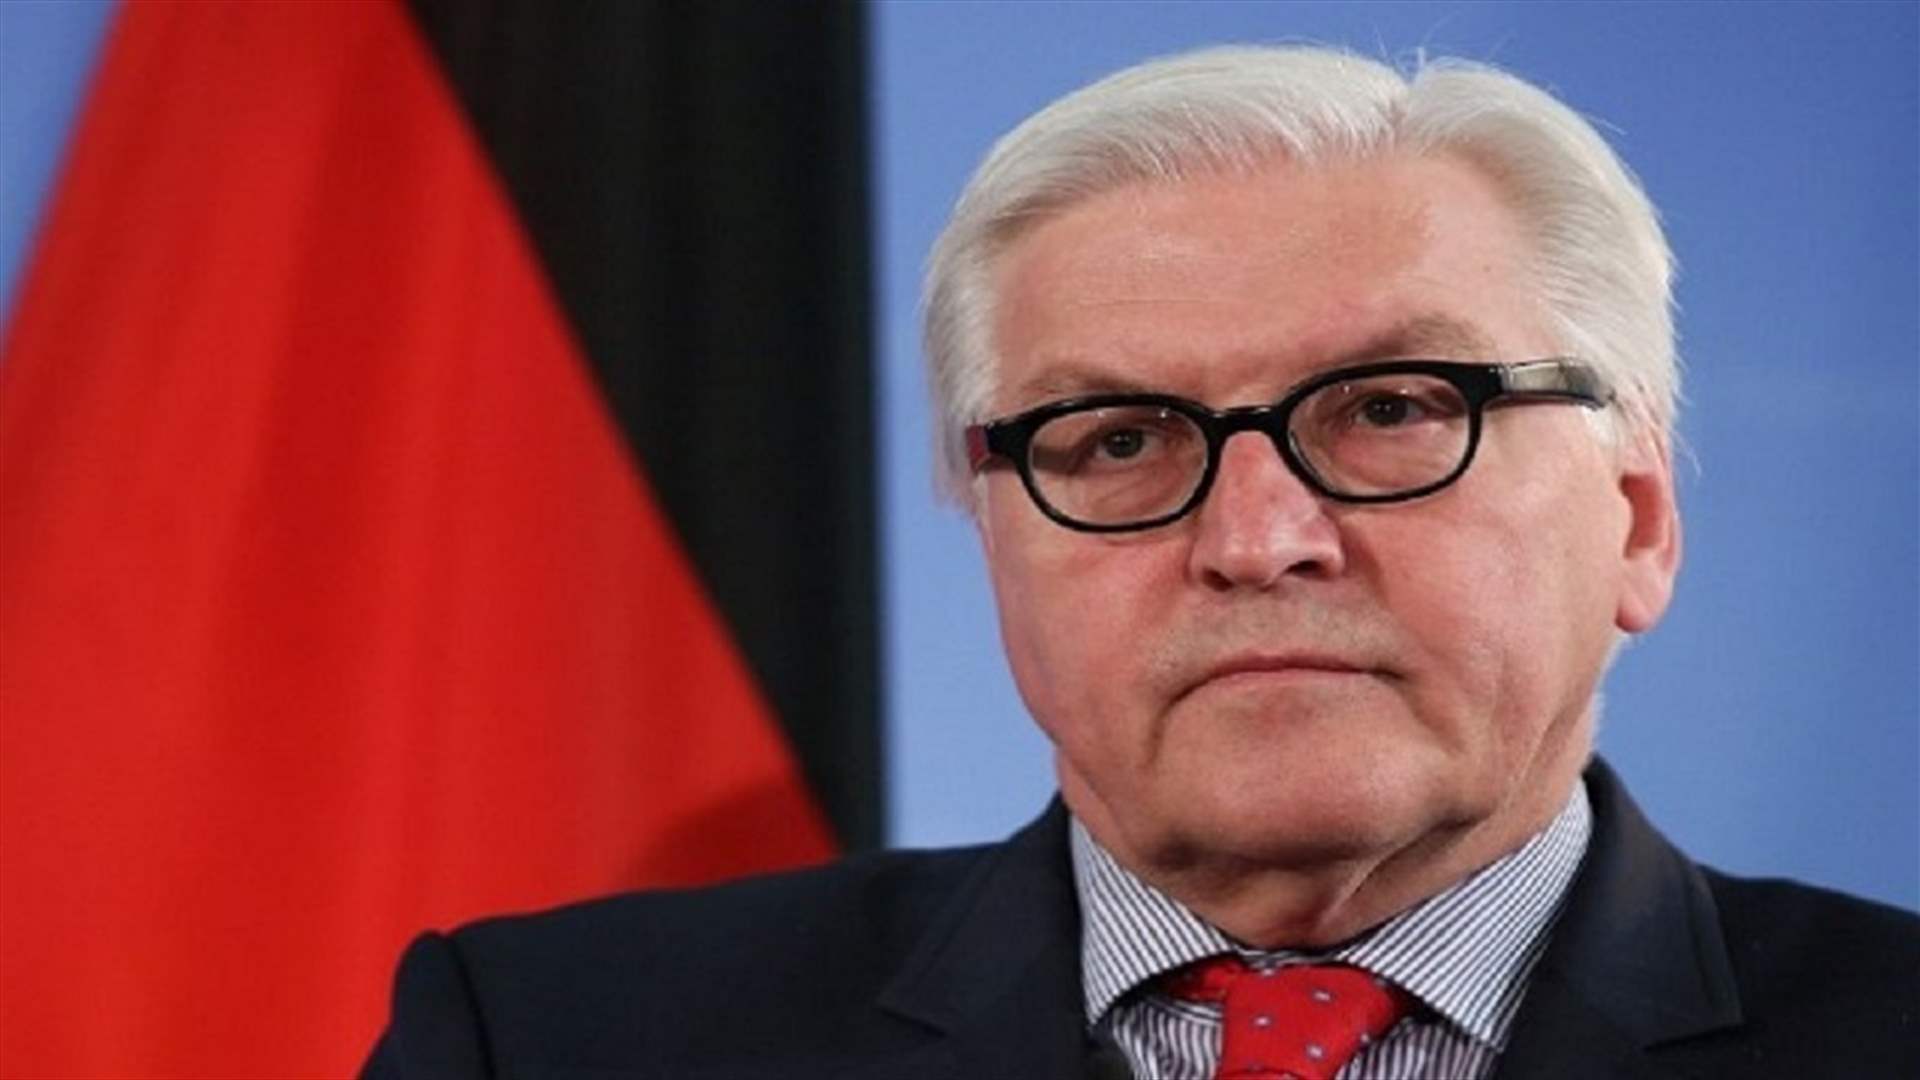 شتاينماير: ألمانيا تدعم جورجيا في مسارها الأوروبي